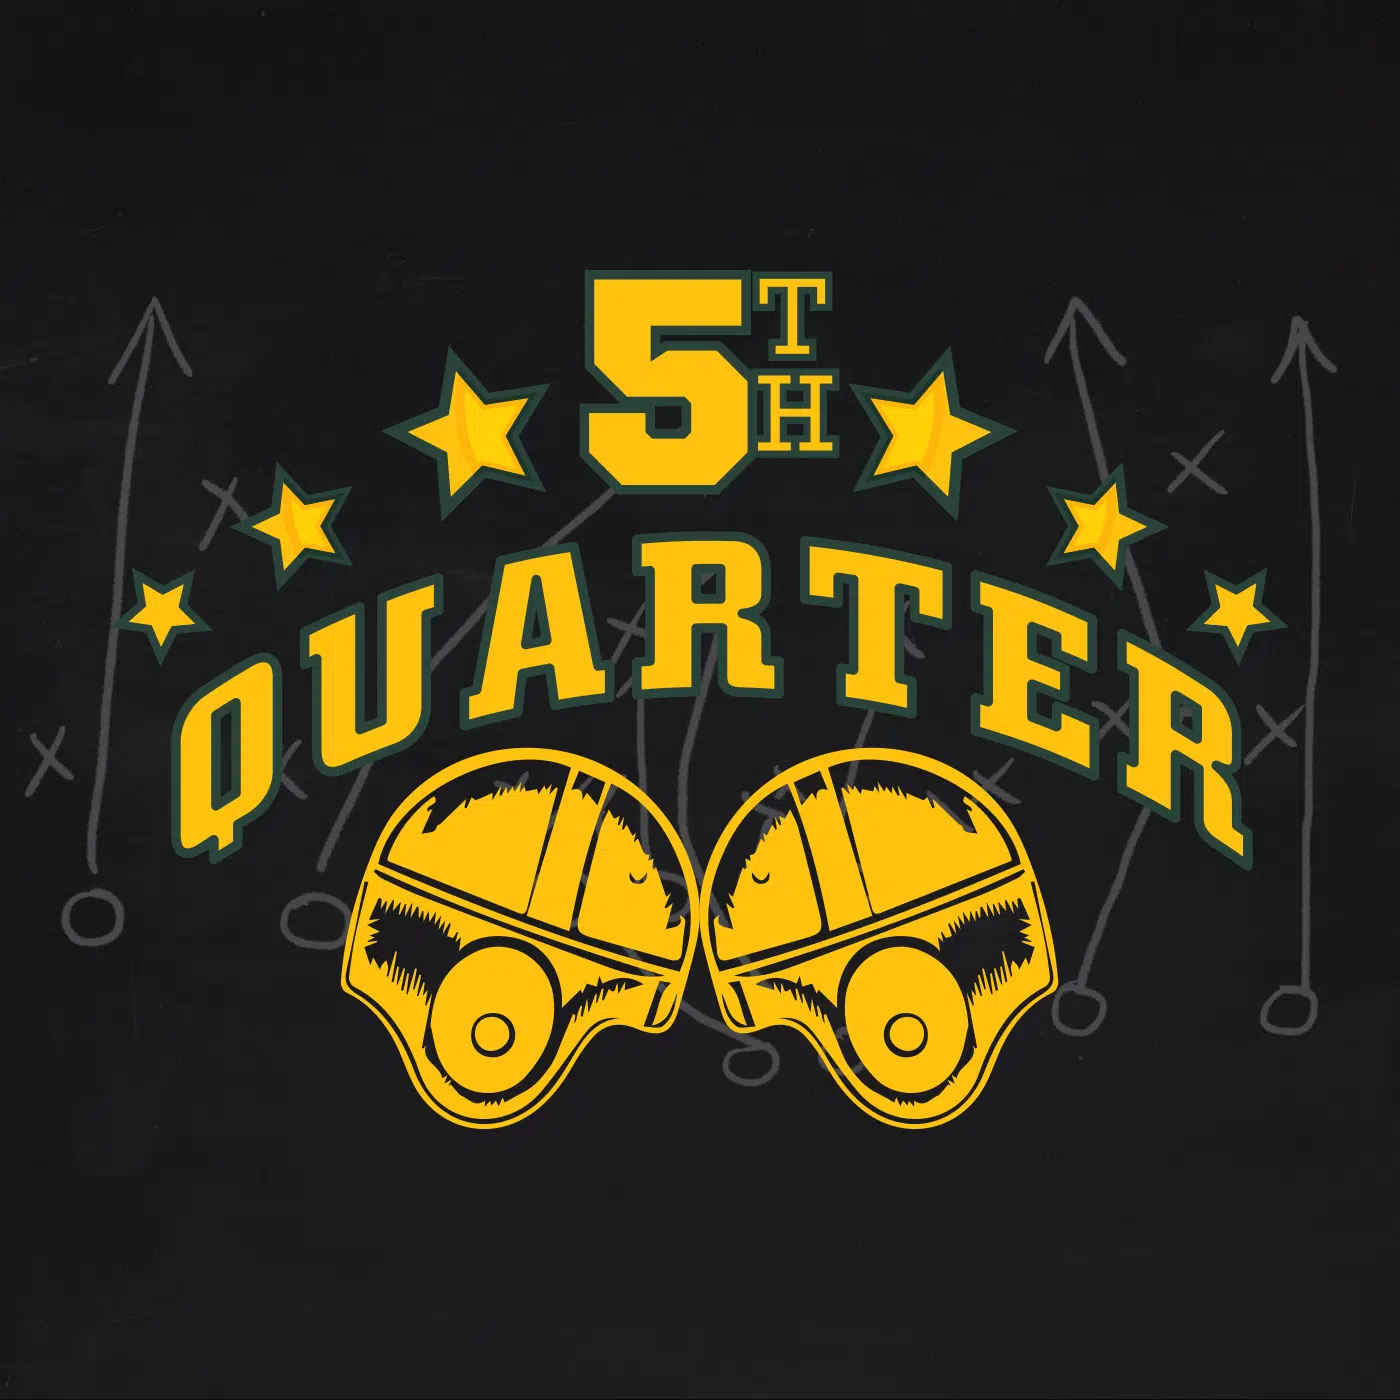 5th Quarter